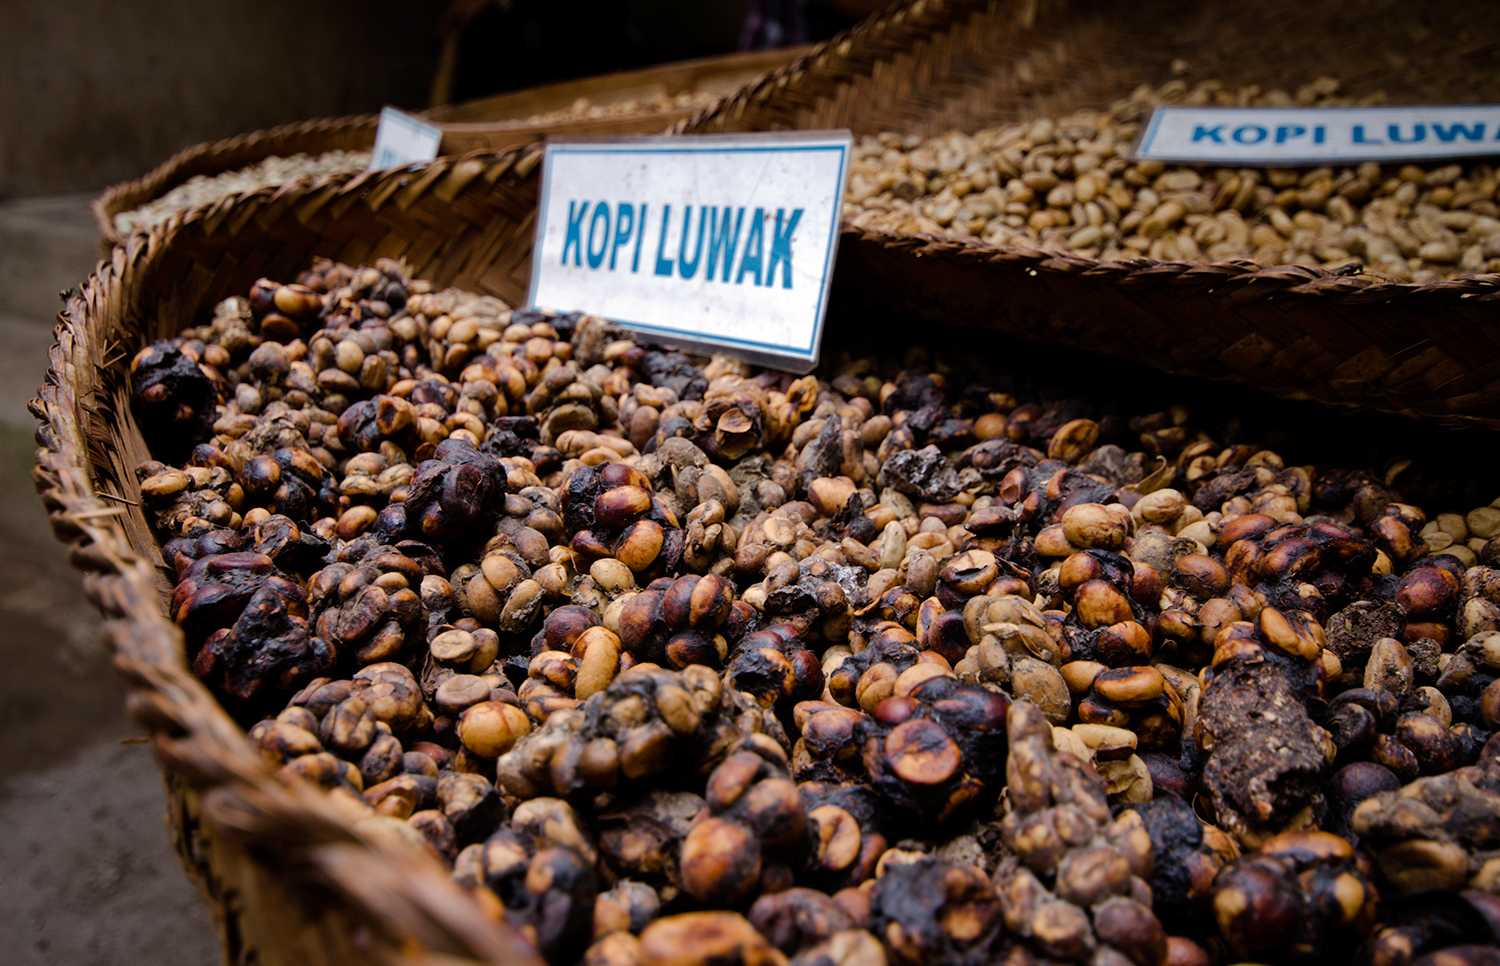 Кофе из какашек обезьян. Копи Лювак. Kopi Luwak кофе. Сорт кофе Лювак. Самый дорогой кофе в мире копи Лювак.